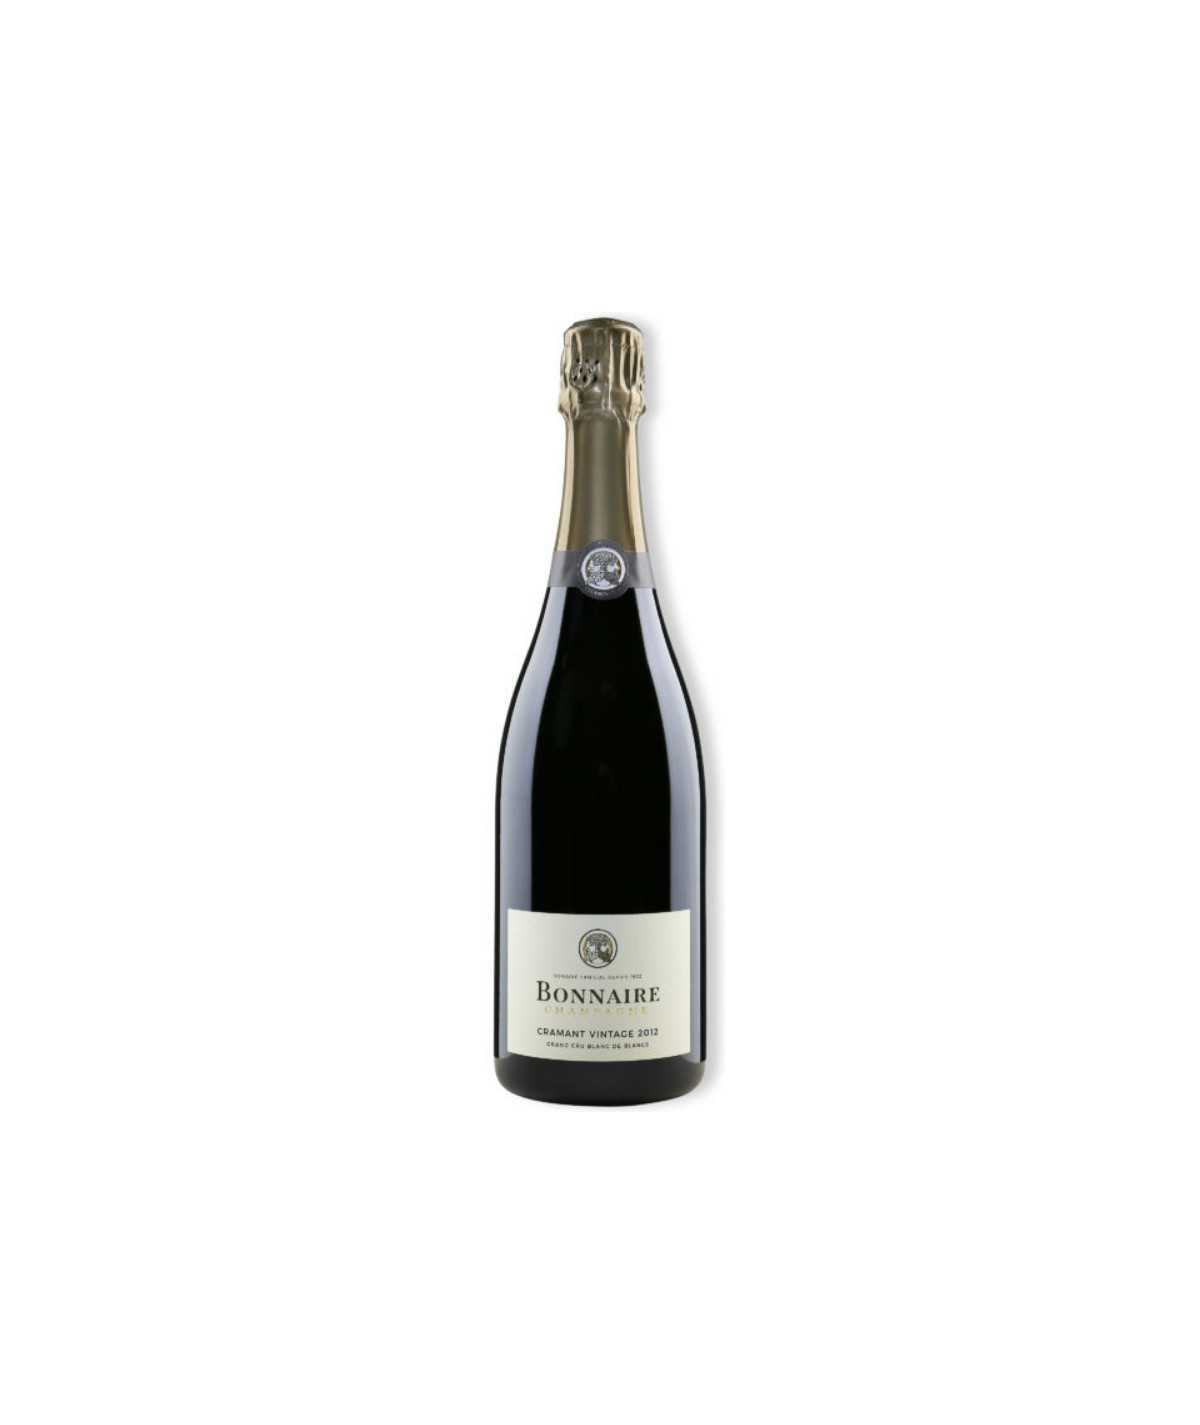 BONNAIRE Champagne Cramant Blanc De Blancs 2015 vintage